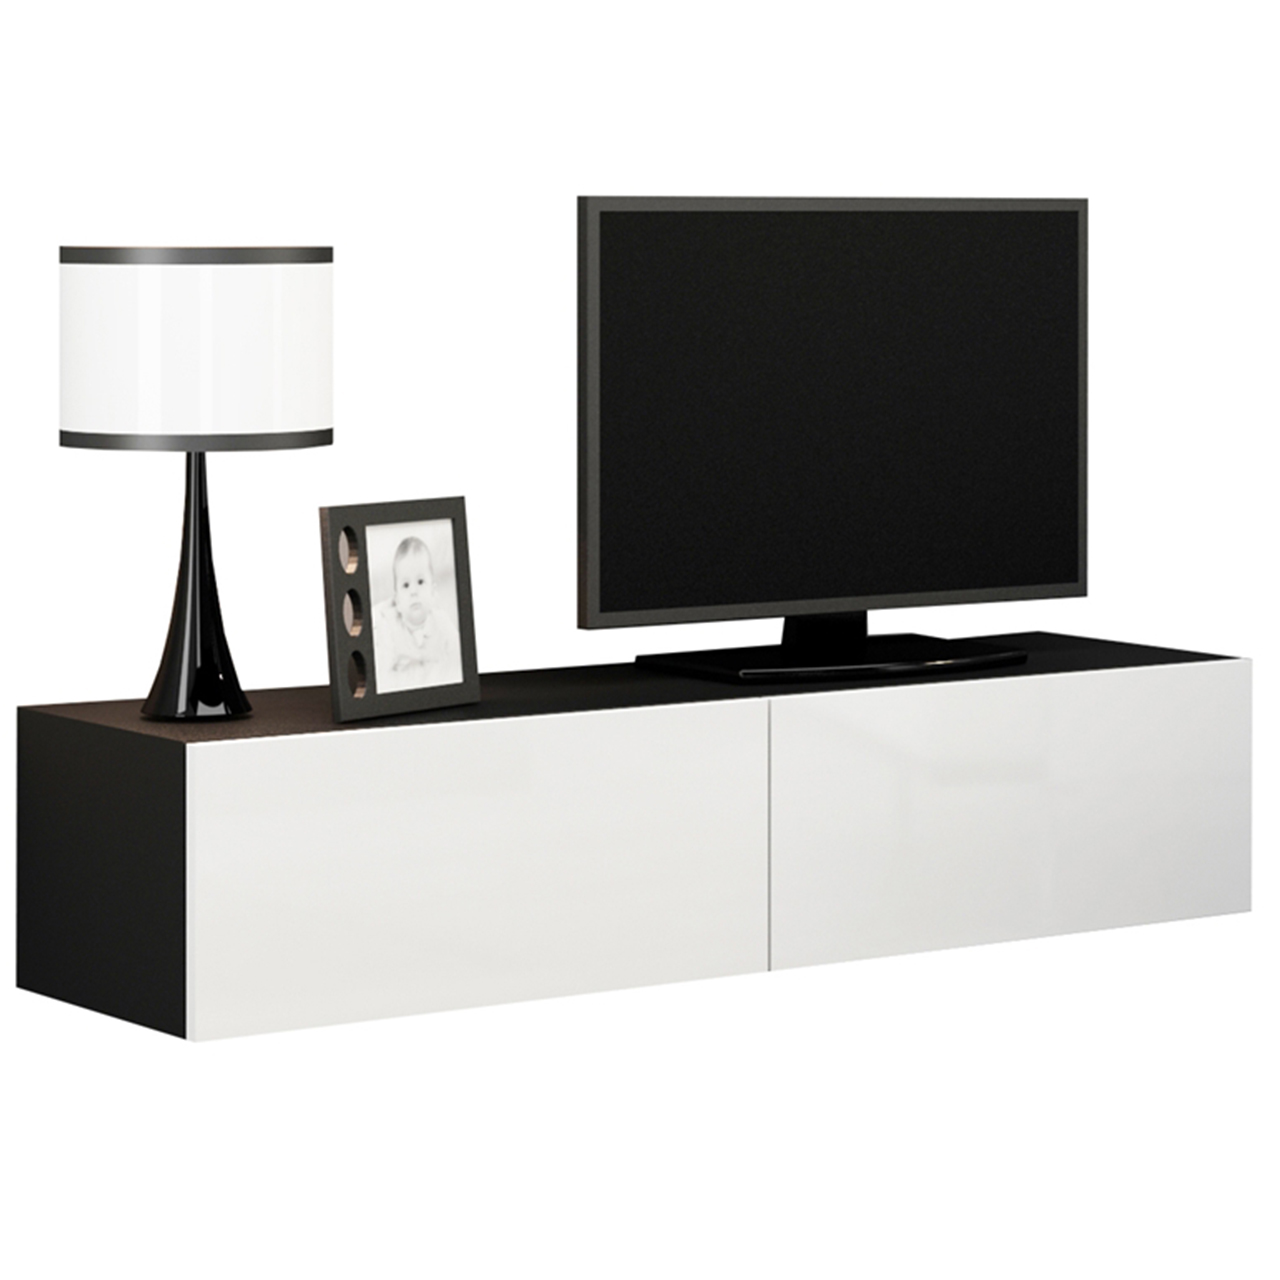 TV Stand 140 VIGO VG4C black / white gloss